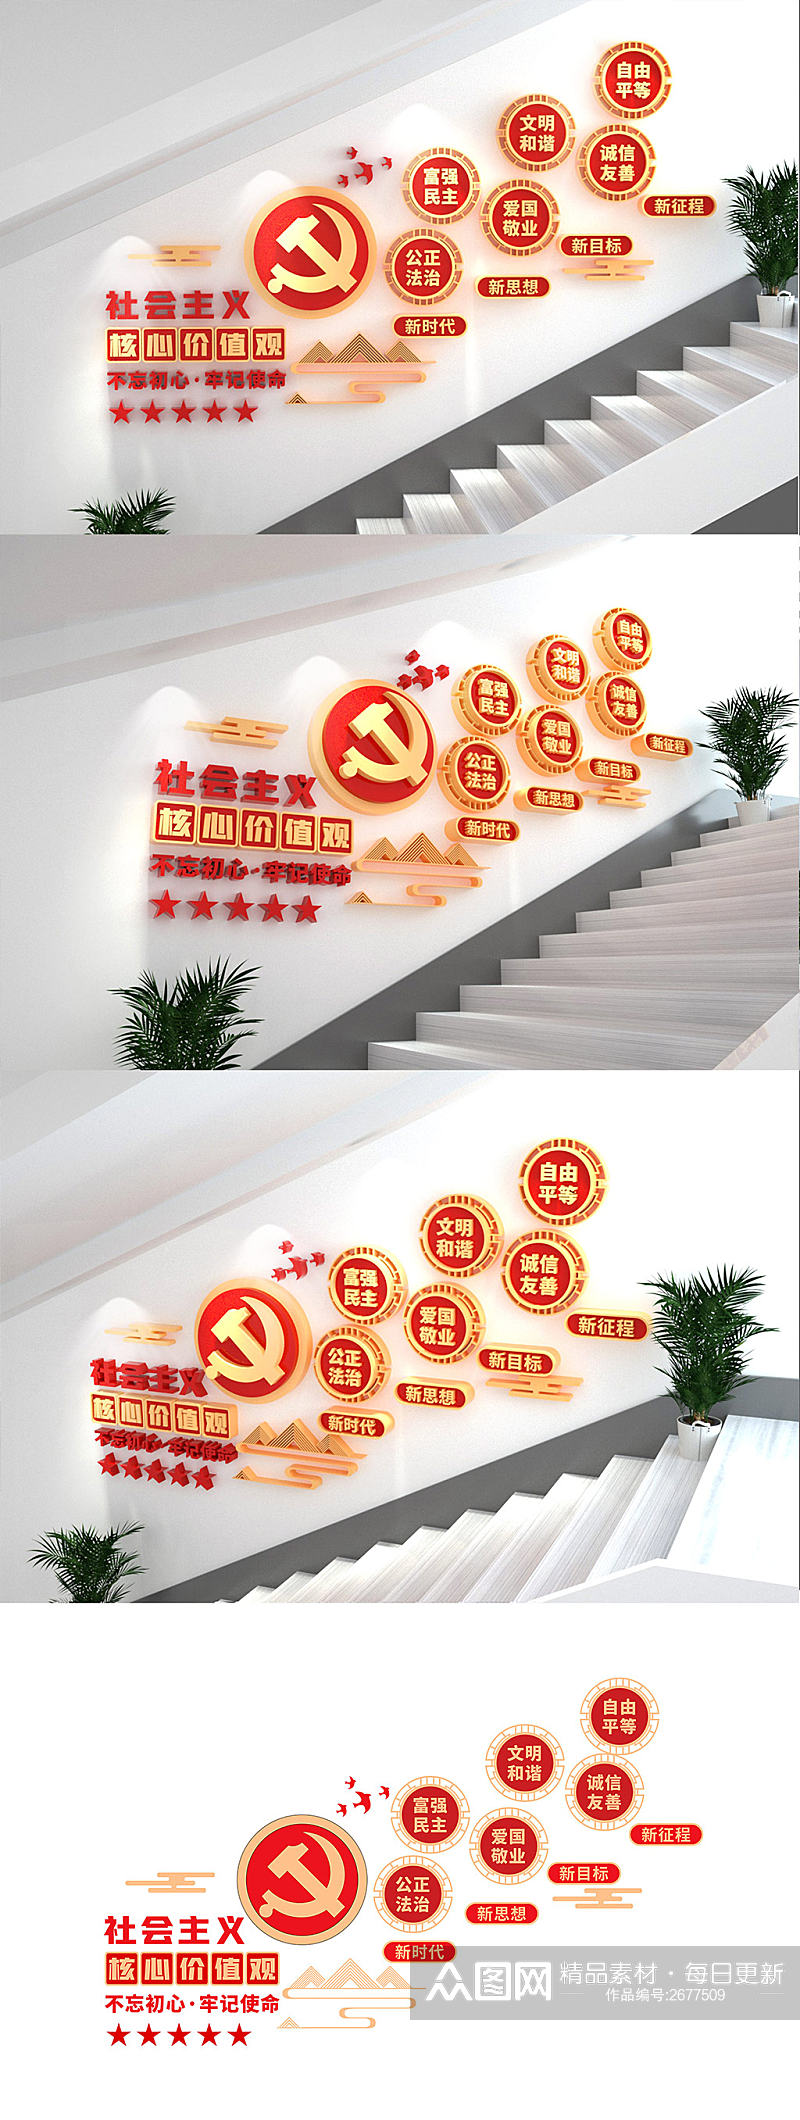 社会主义核心价值观活动室楼梯党建文化墙素材